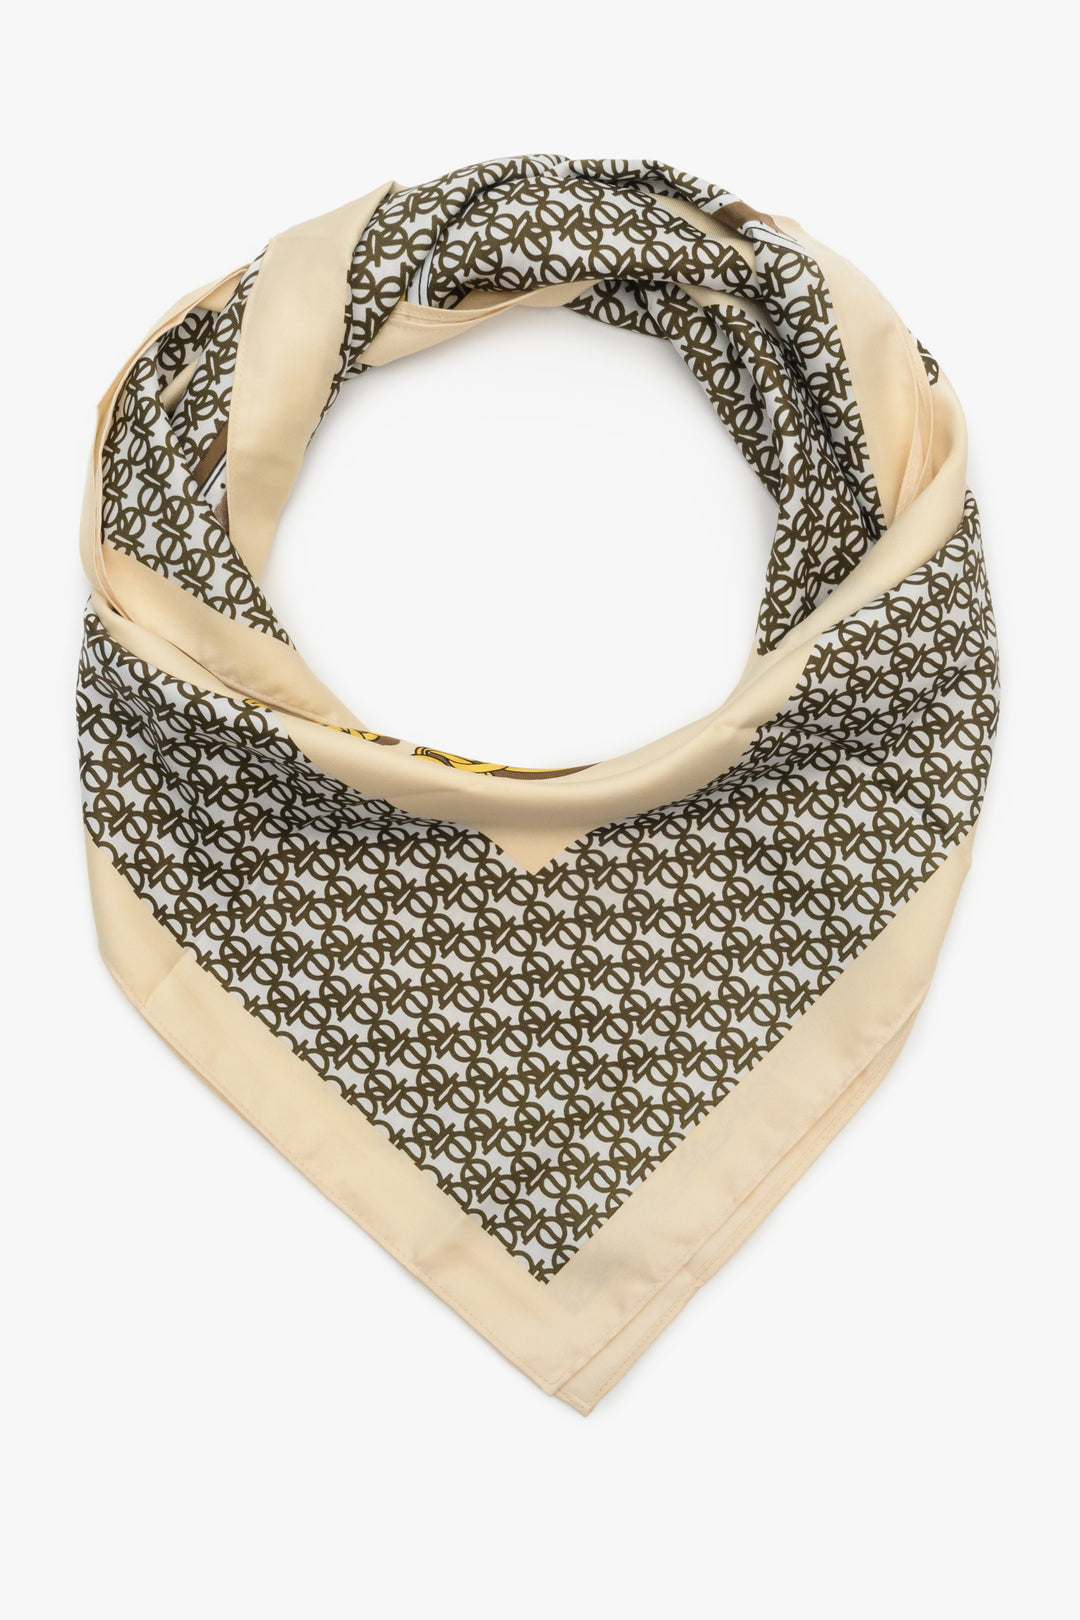 Women's beige neckerchief with brown pattern by Estro.